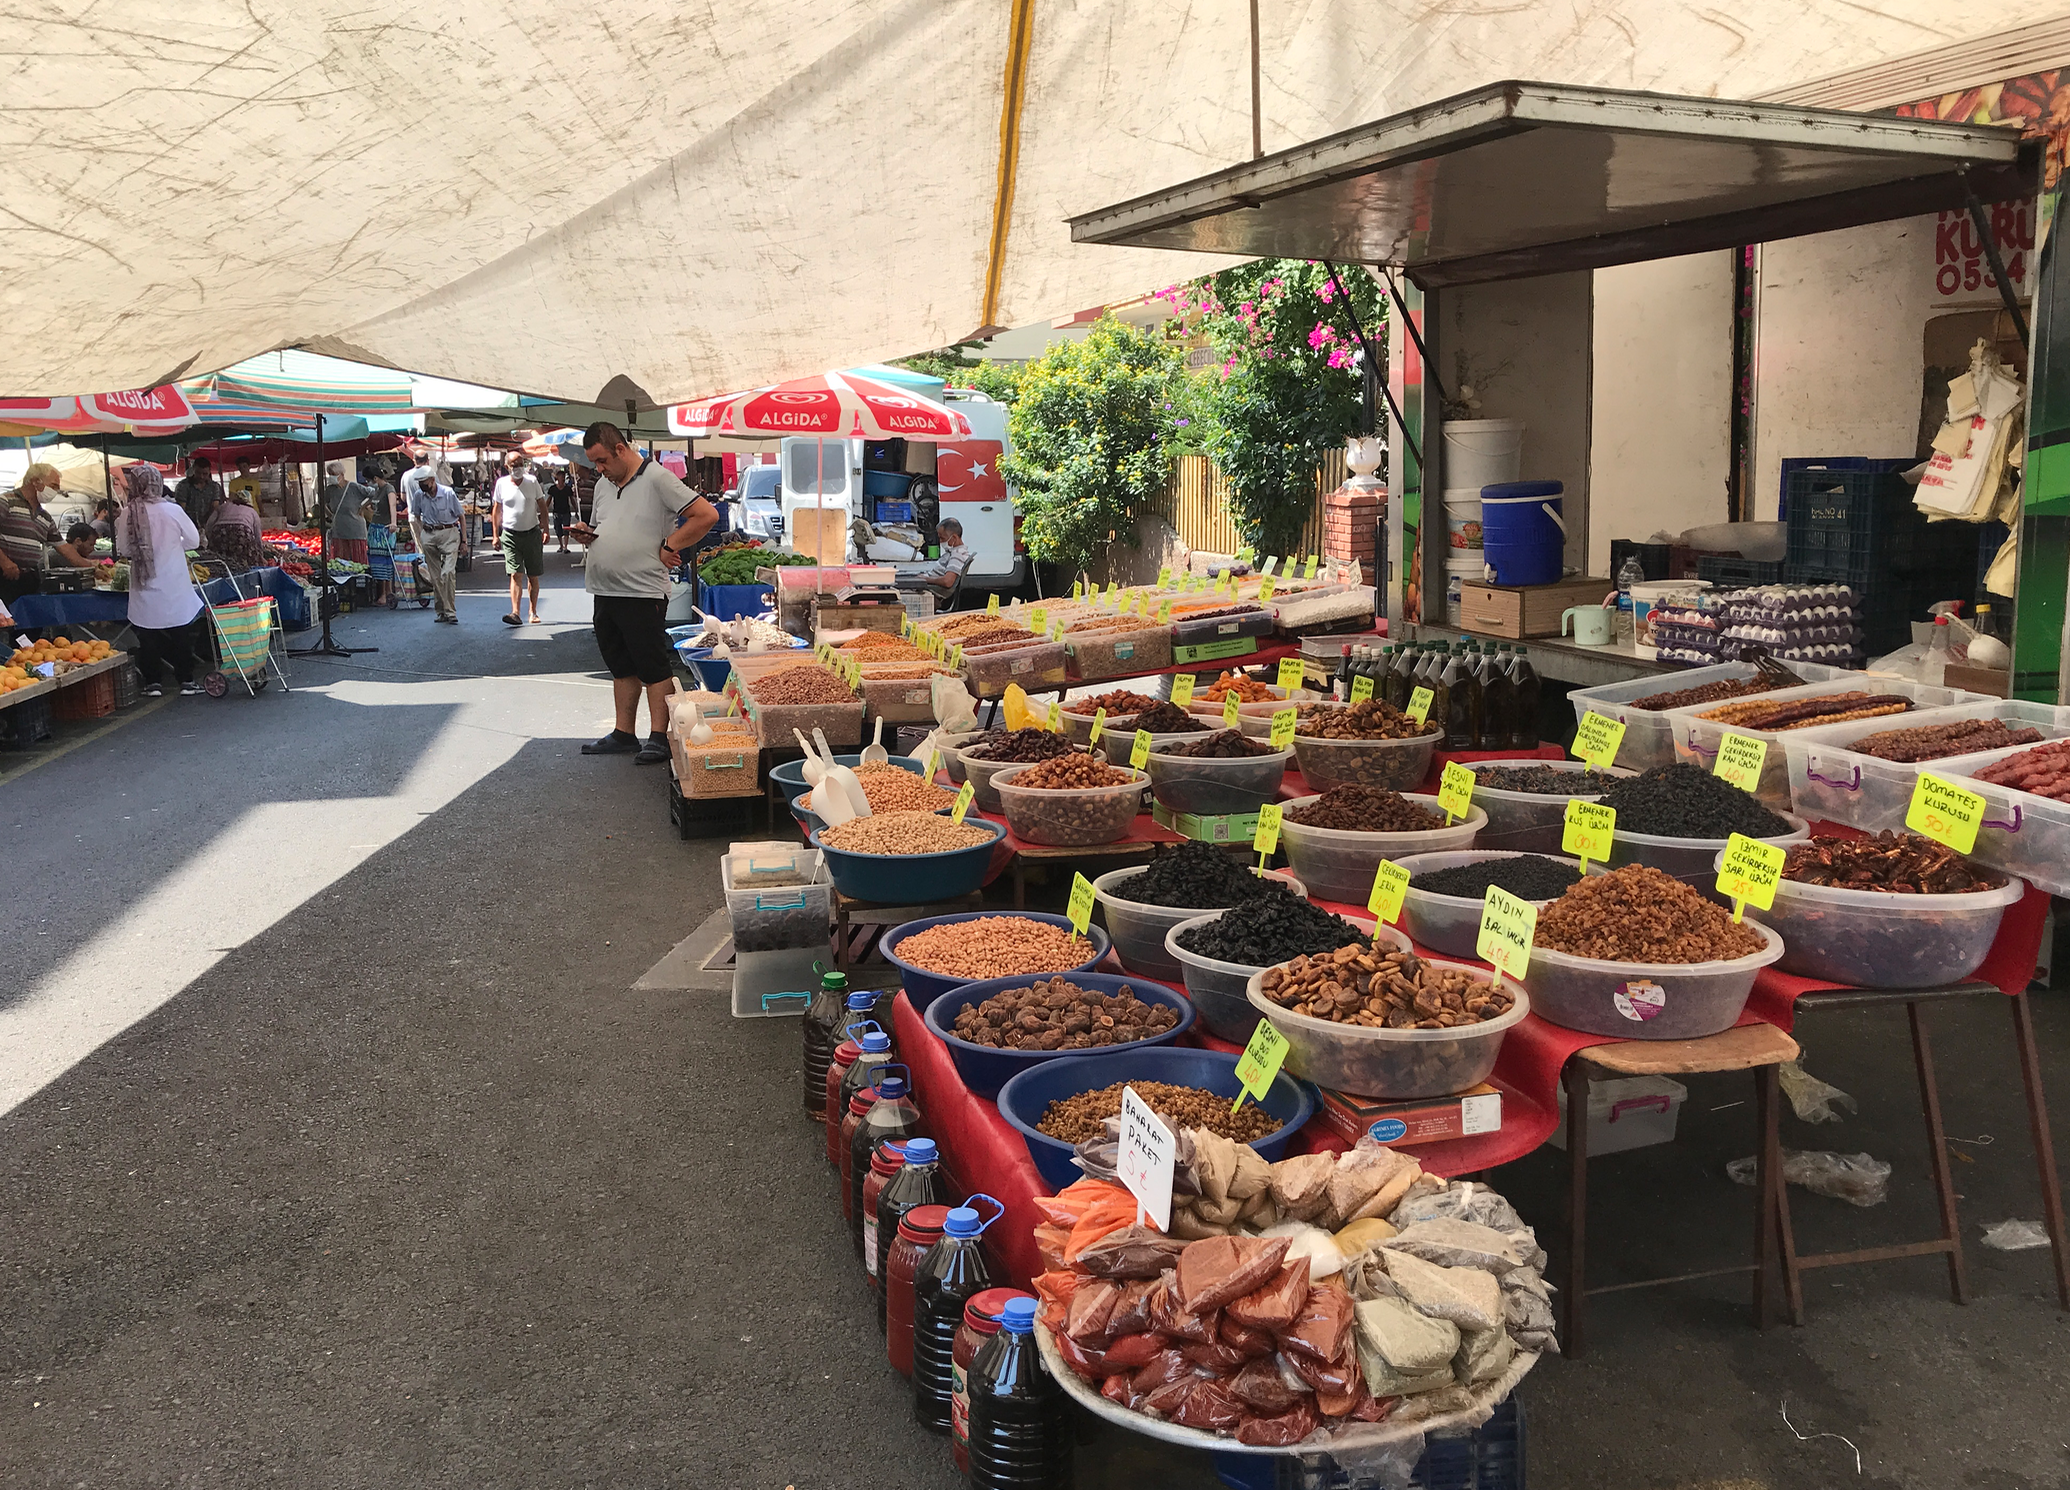 markedsdage i alanya, marked i alanya om omegn, markeder i Alanya, bazar i alanya, seværdigheder i Alanya, oplevelser i Alanya, gratis oplevelser i alanya, frugt og grønt marked alanya, tekstilmarked alanya, unikke oplevelser i alanya, tyrkisk mad, hverdag i alanya